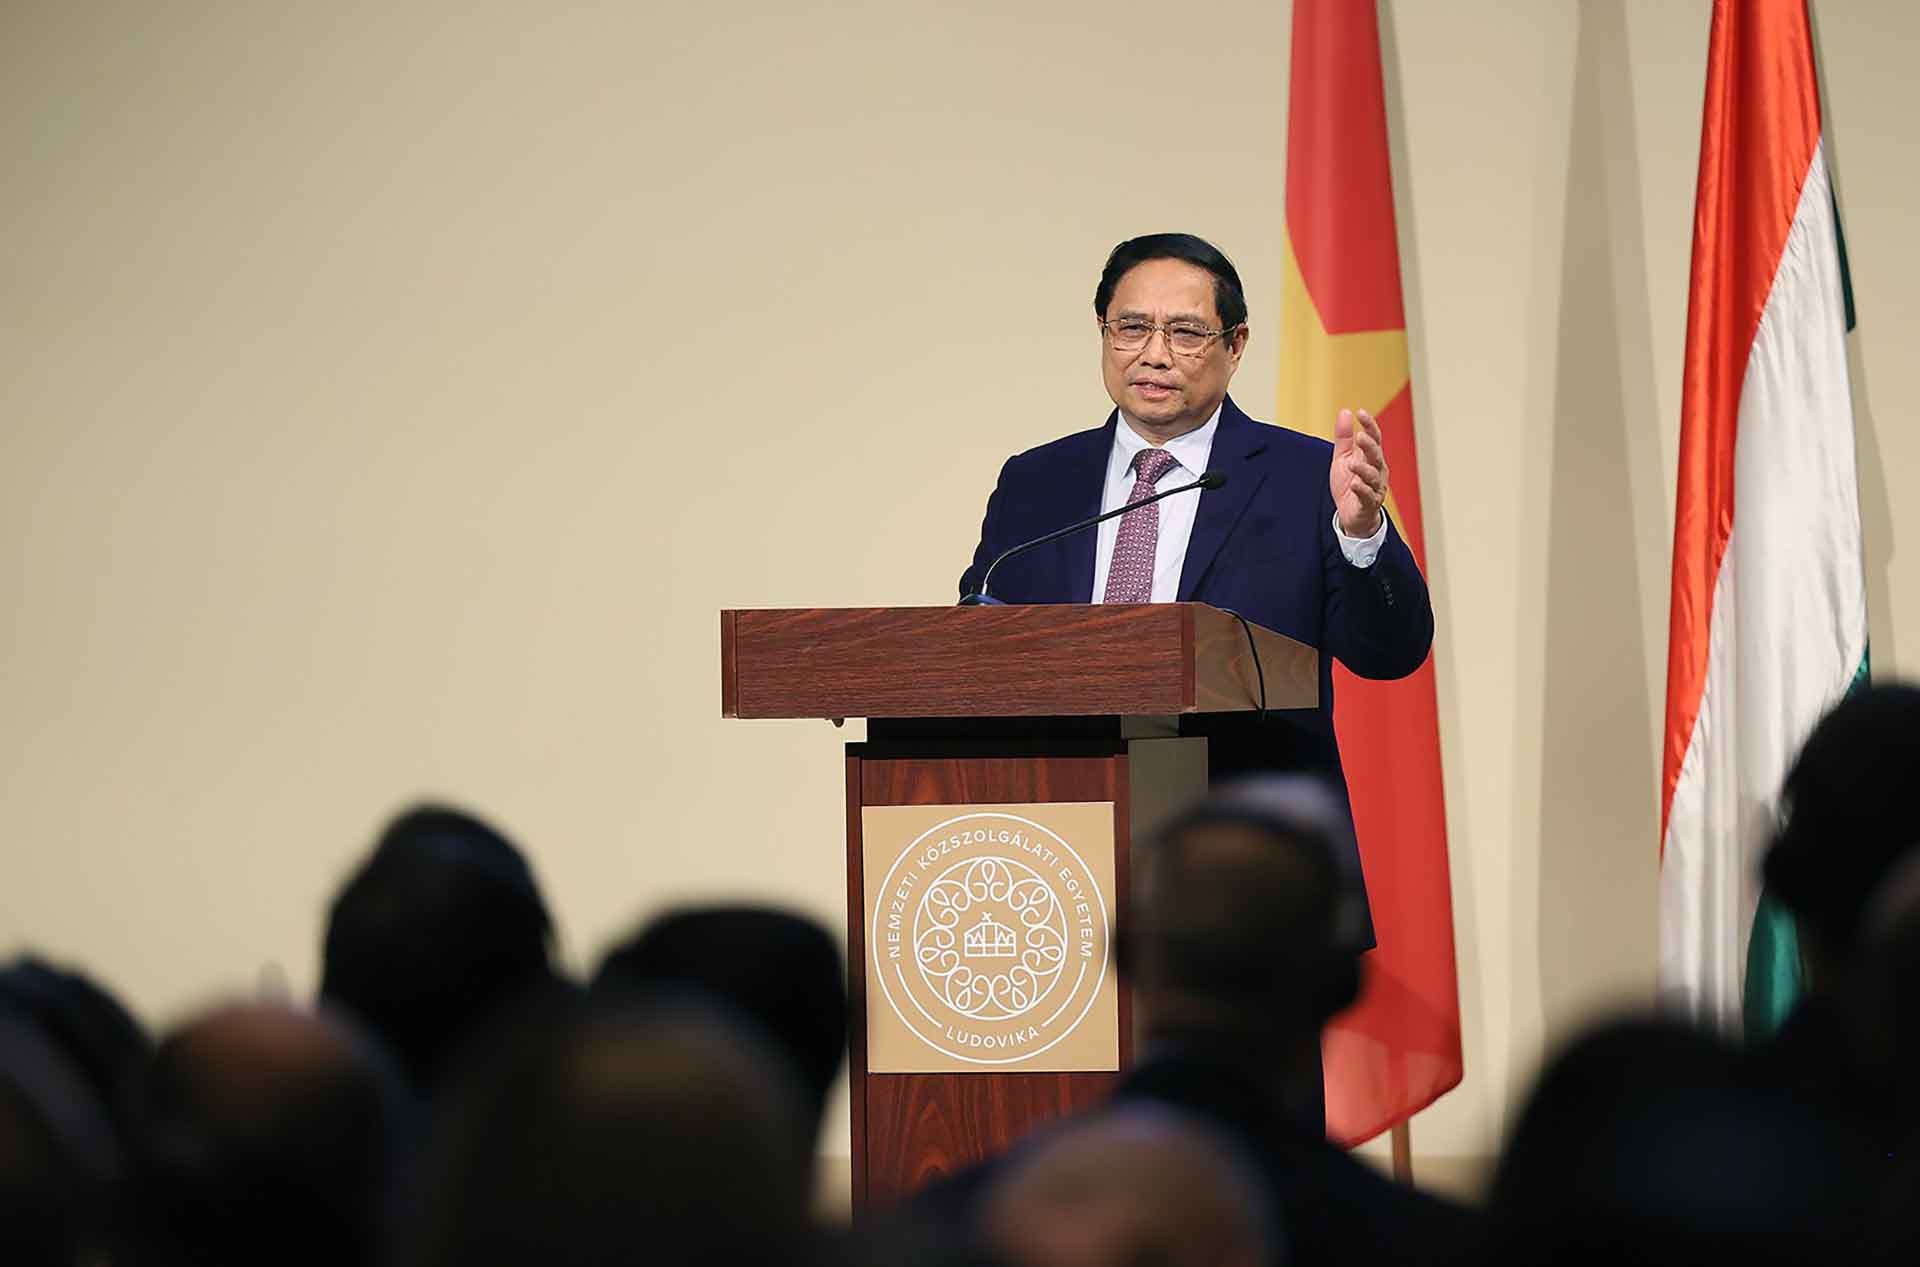 Thủ tướng Phạm Minh Chính phát biểu tại Đại học Hành chính công quốc gia Hungary về chính sách của Việt Nam. (Nguồn: VGP)